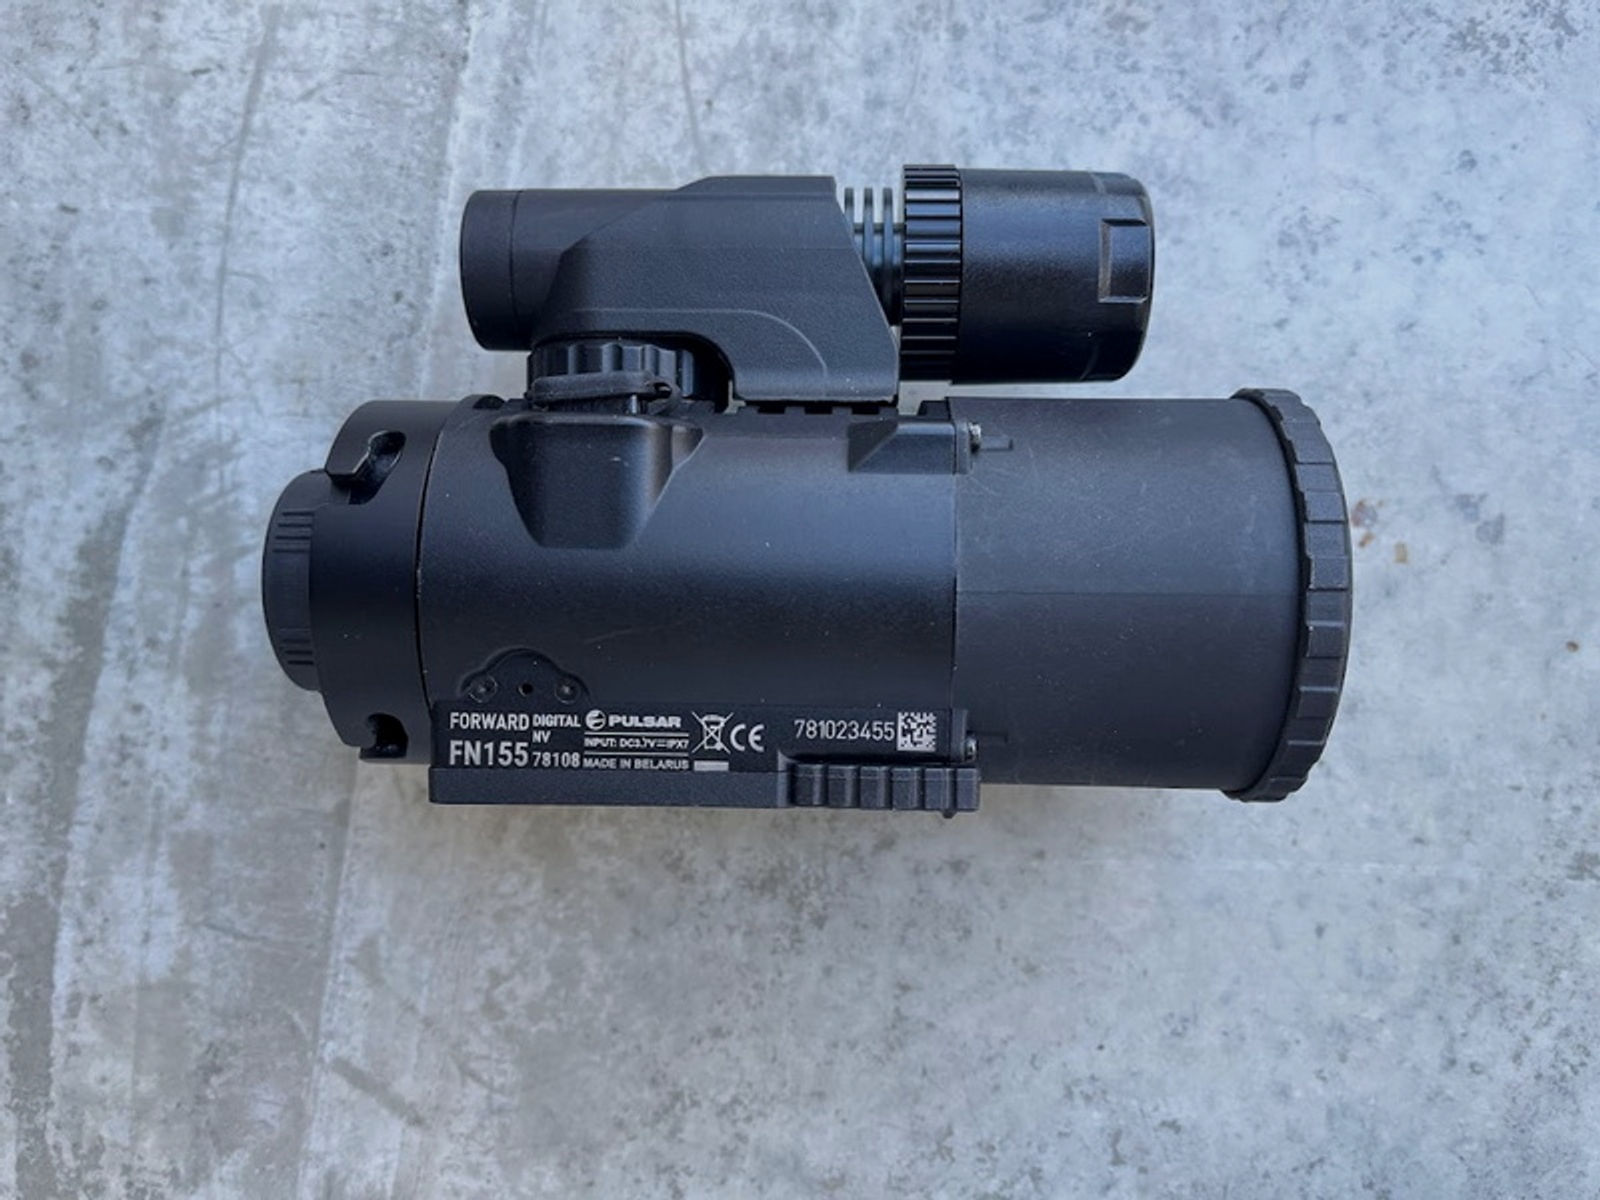 Pulsar FN155 Nachtsicht Vorsatzgerät